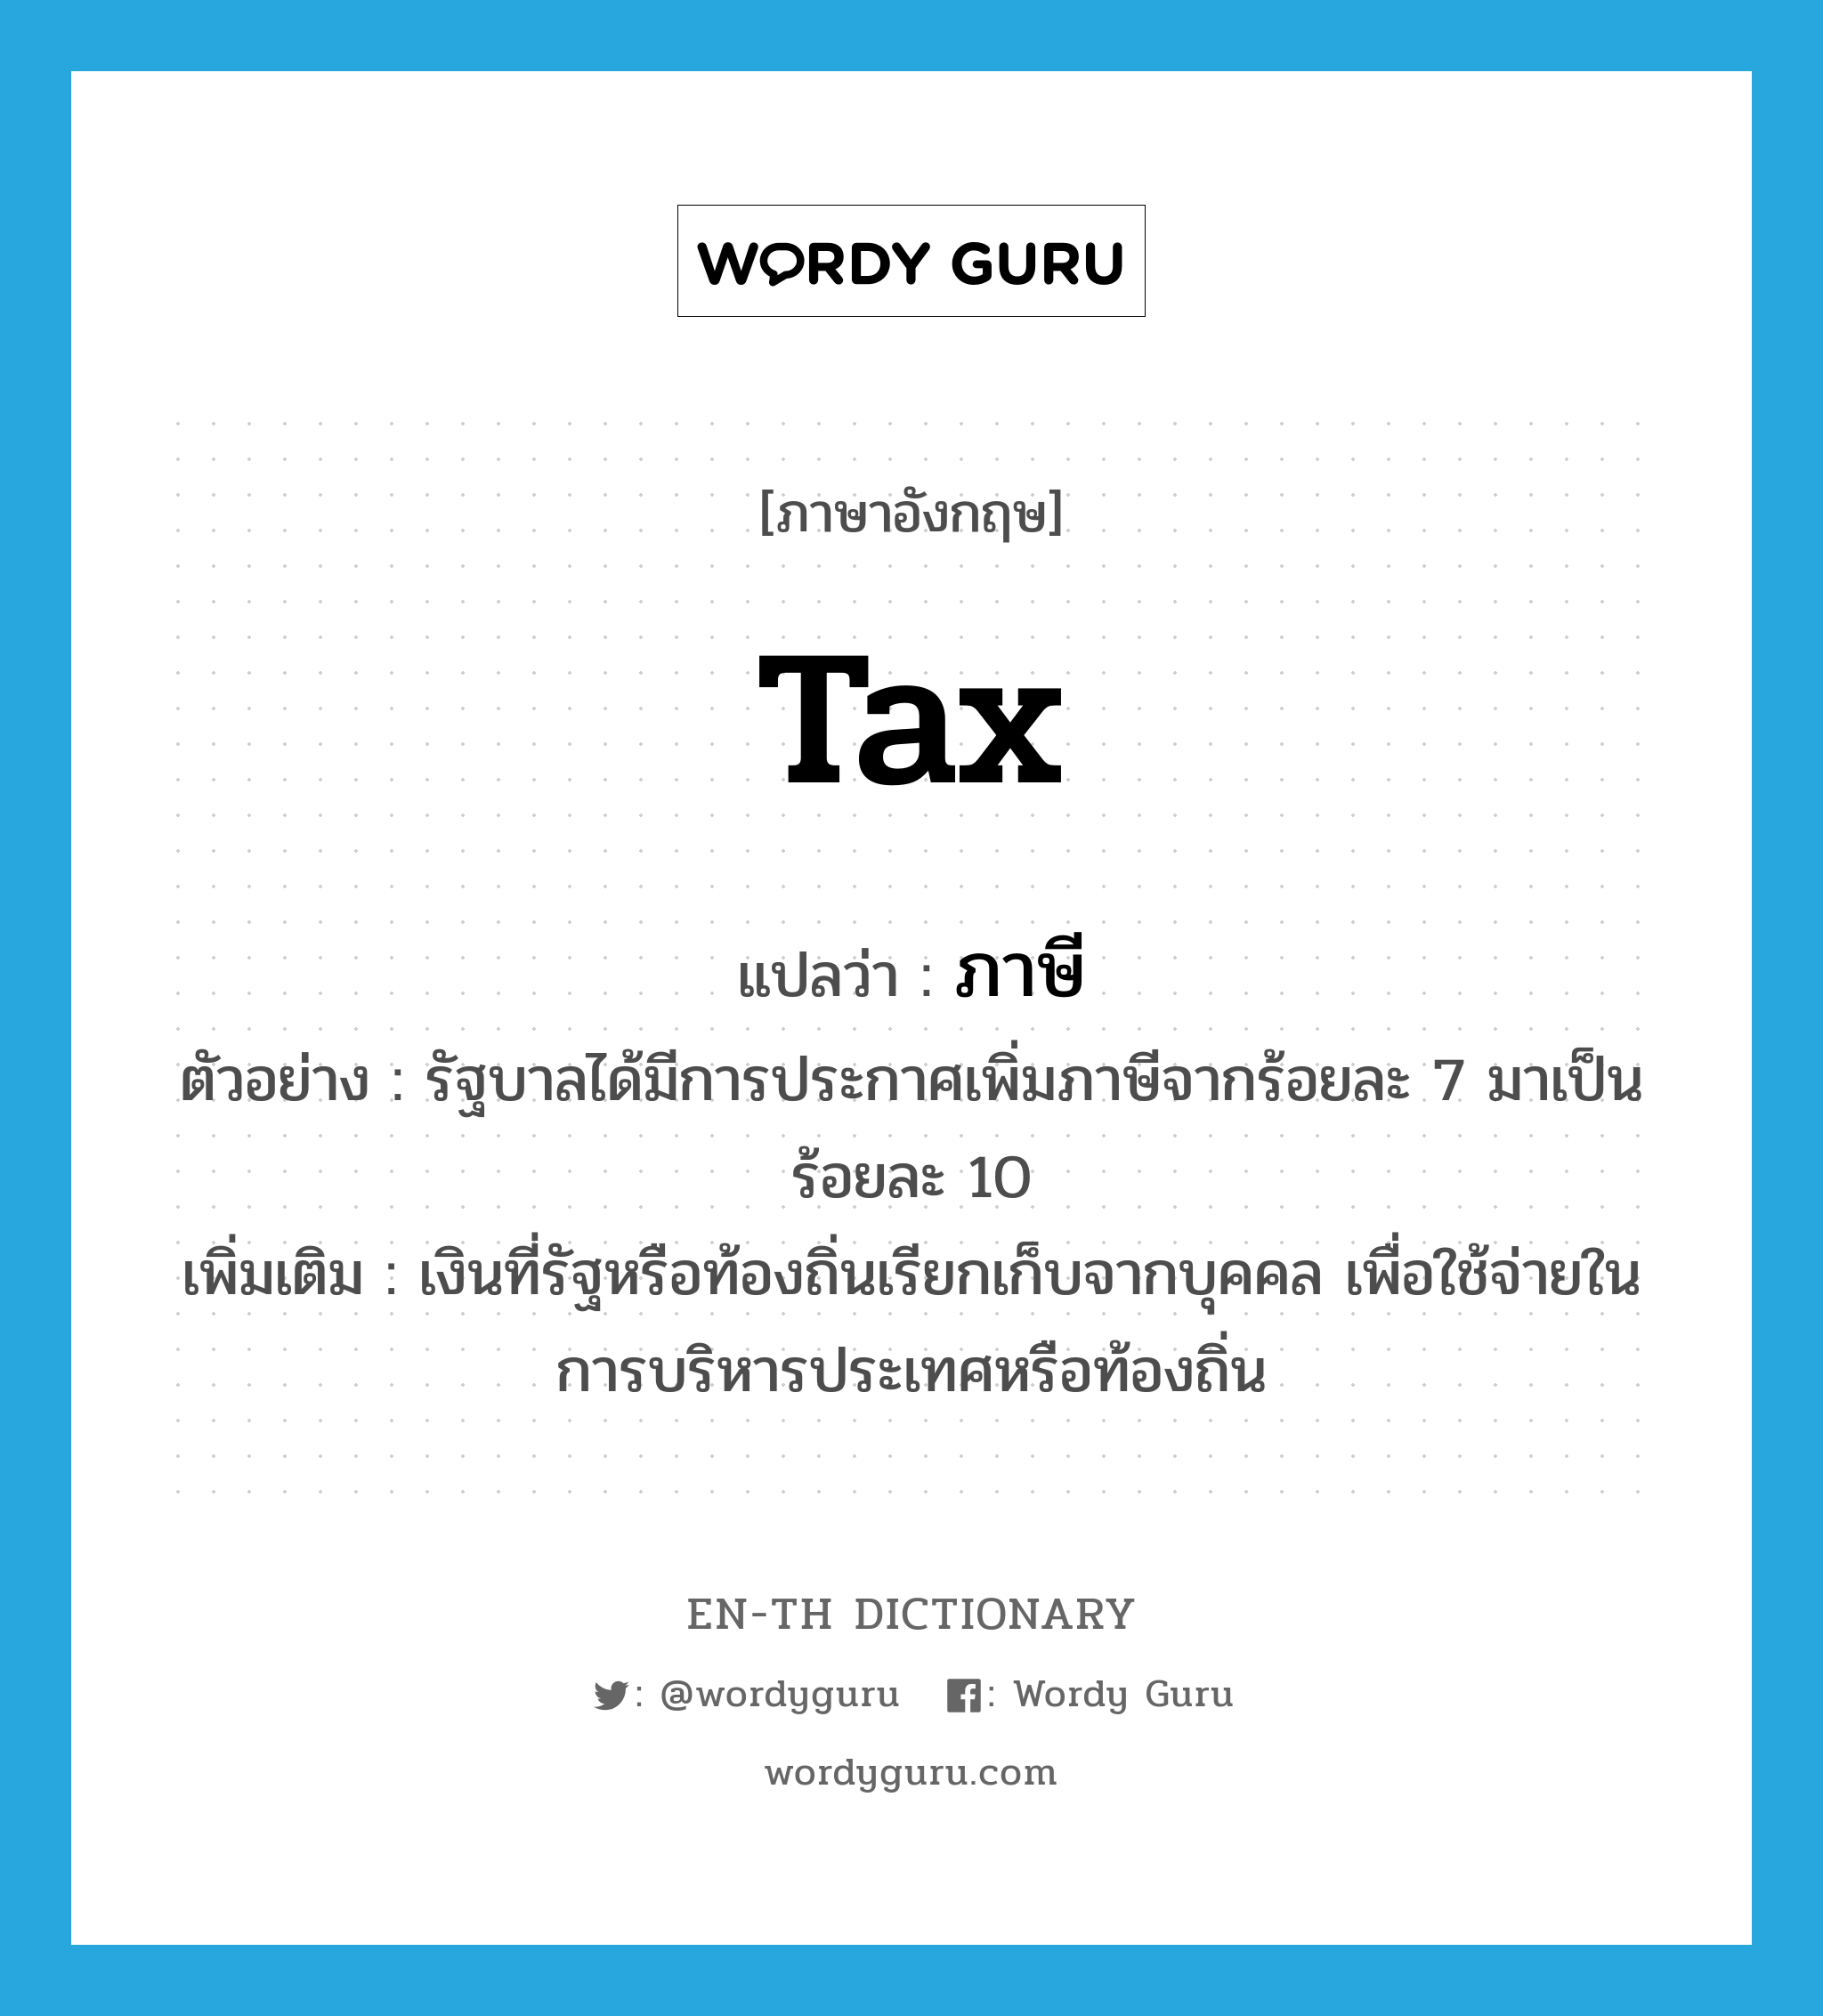 tax แปลว่า?, คำศัพท์ภาษาอังกฤษ tax แปลว่า ภาษี ประเภท N ตัวอย่าง รัฐบาลได้มีการประกาศเพิ่มภาษีจากร้อยละ 7 มาเป็นร้อยละ 10 เพิ่มเติม เงินที่รัฐหรือท้องถิ่นเรียกเก็บจากบุคคล เพื่อใช้จ่ายในการบริหารประเทศหรือท้องถิ่น หมวด N